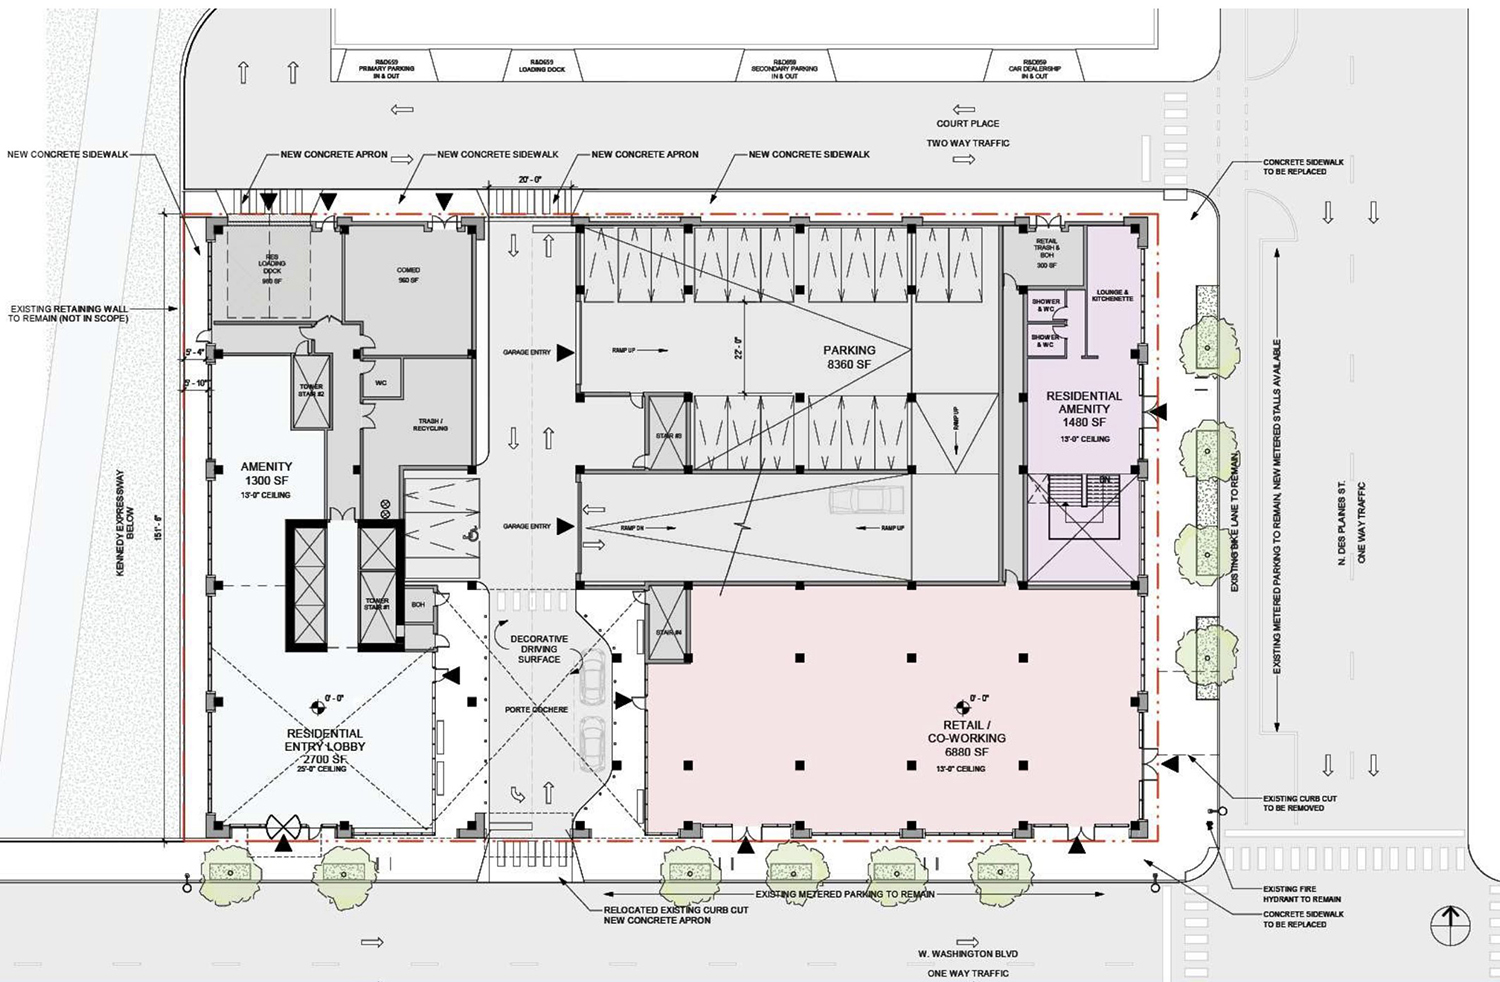 Ground Floor Plan of 640 W Washington Boulevard. Drawing by Hartshorne Plunkard Architecture